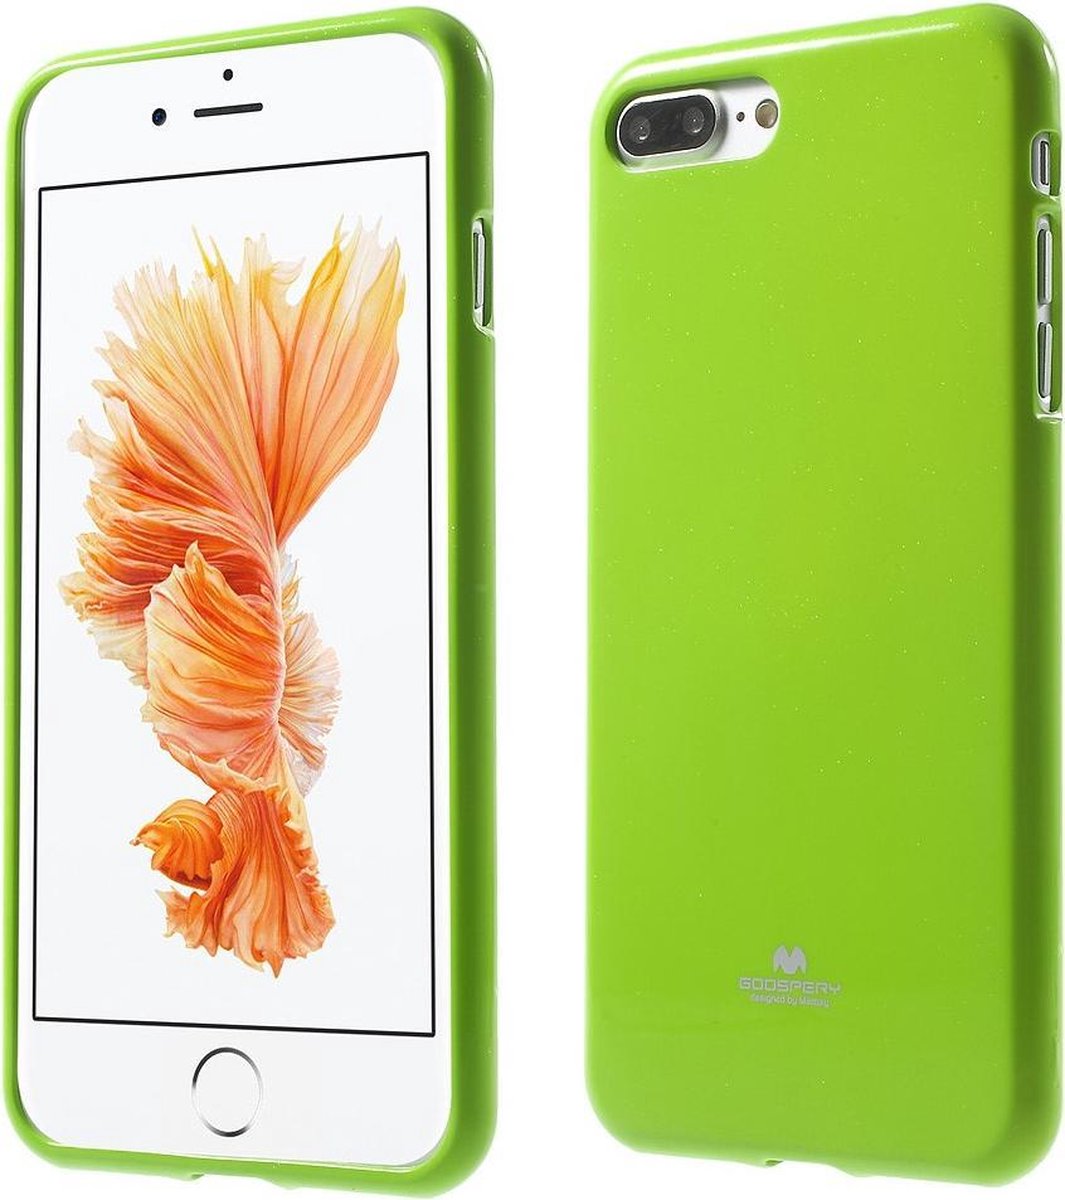 Flexibele Jelly iPhone cover voor iPhone 7/8 Plus - Groen - Goospery